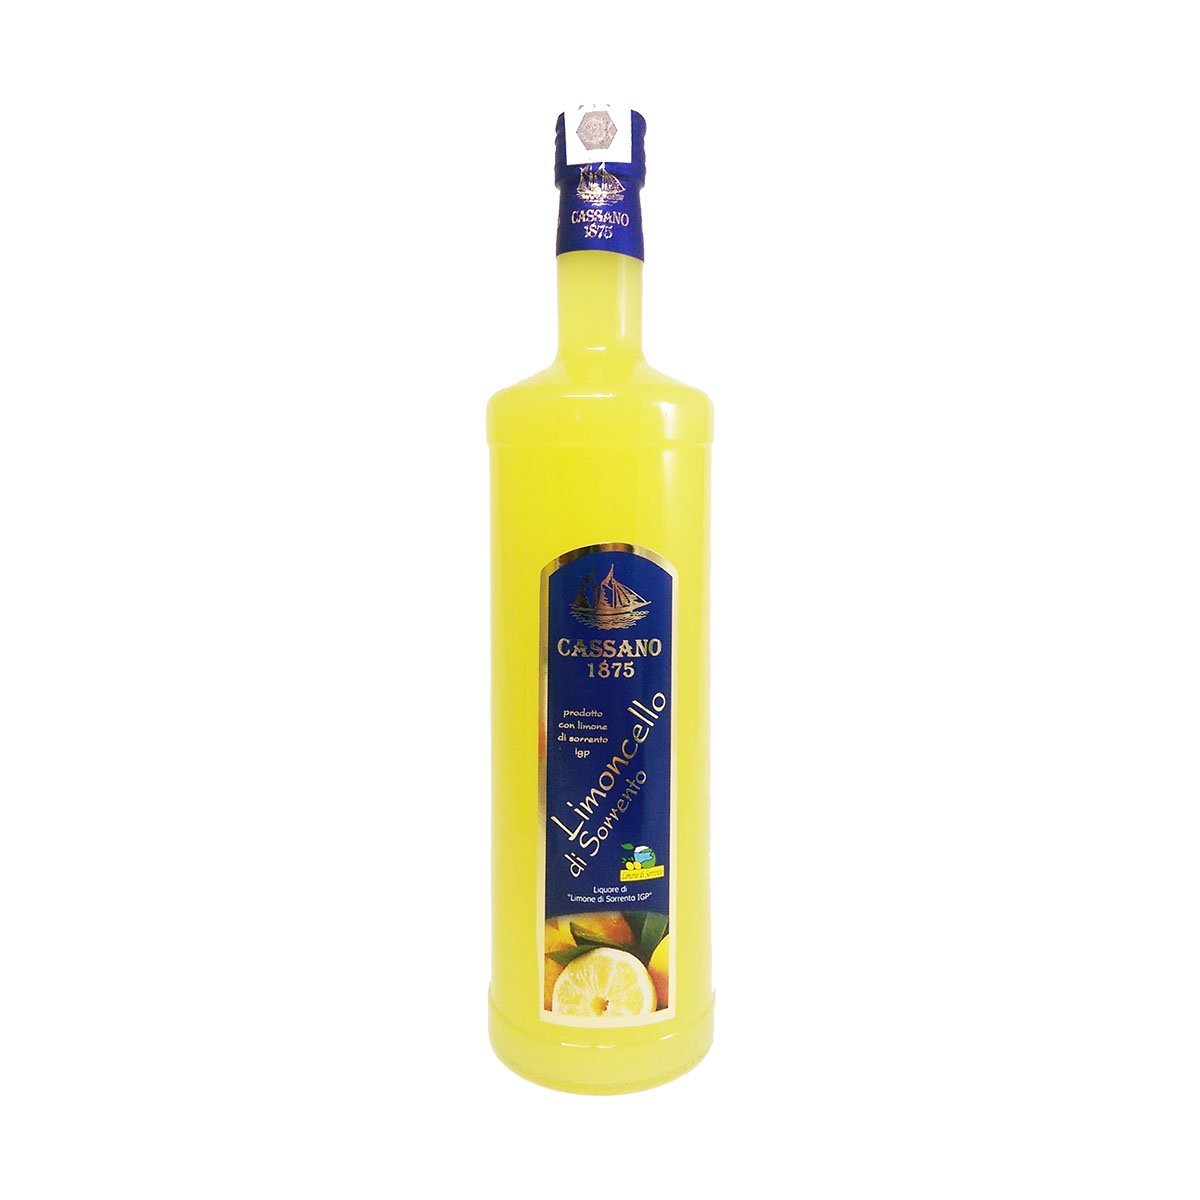 Offer – PepeGusto Party Lemon Limoncello of 1000ml Sorrento 3x IGP Autumn